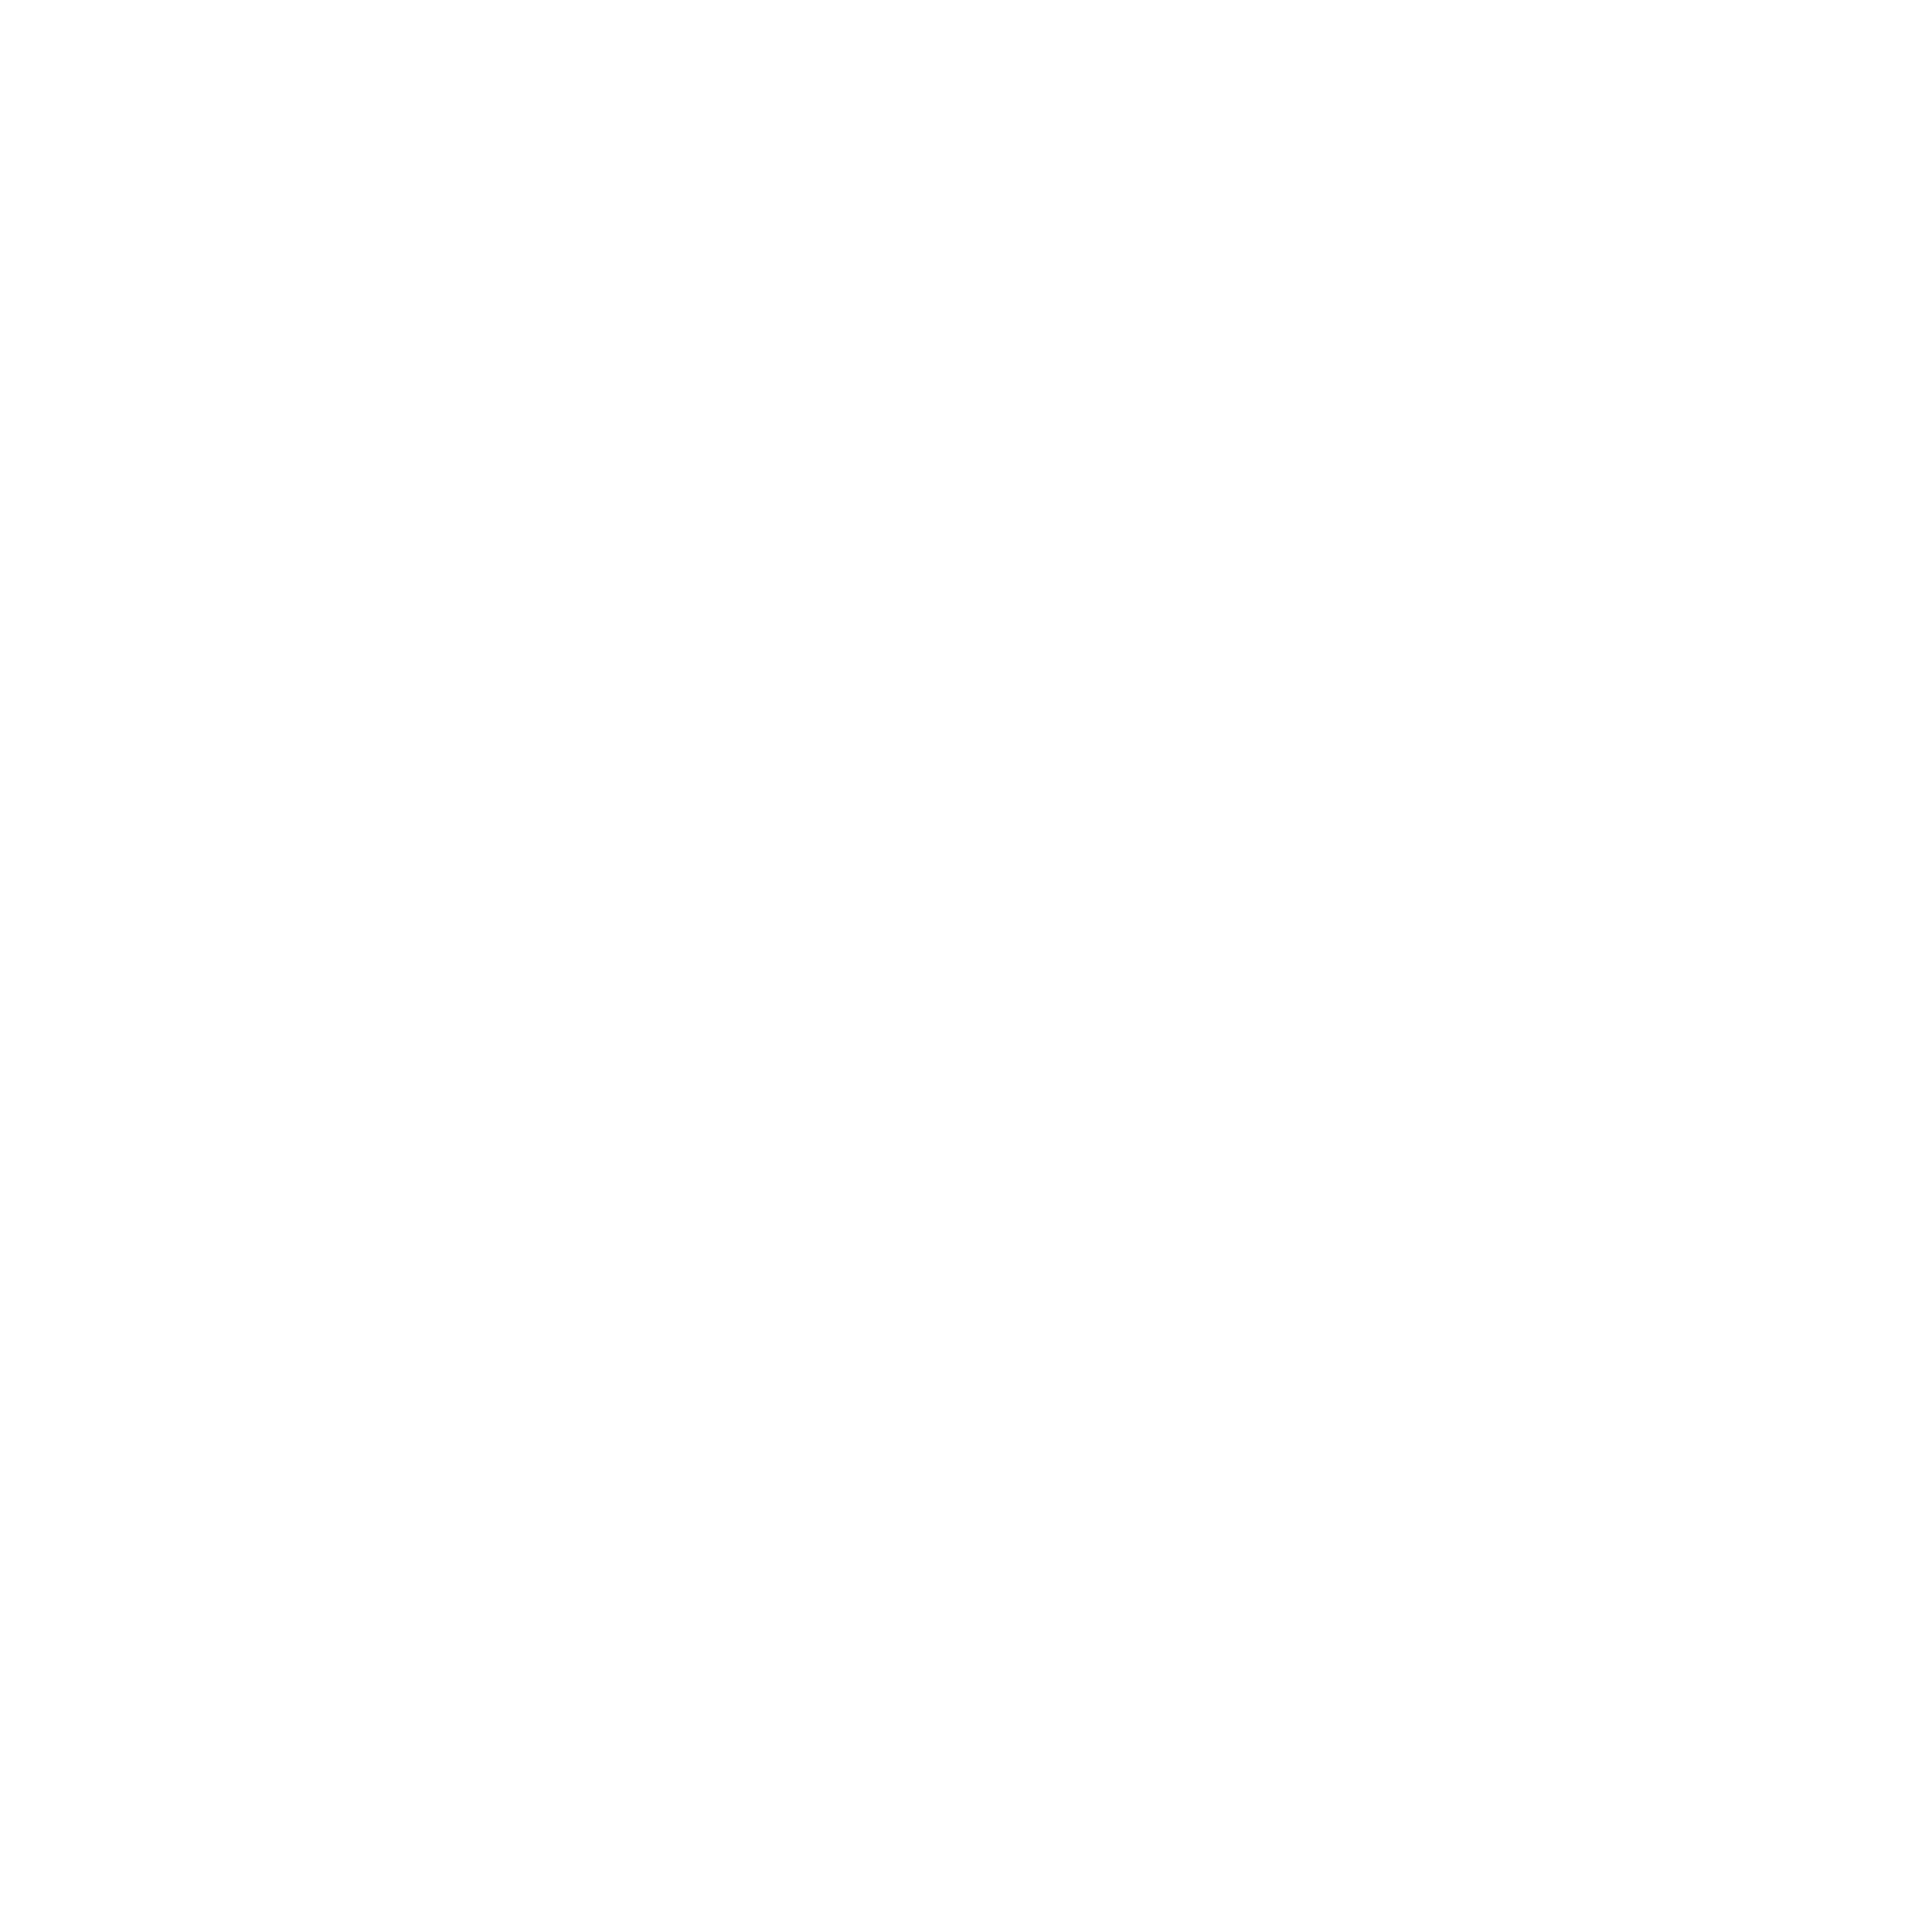 Stay Q